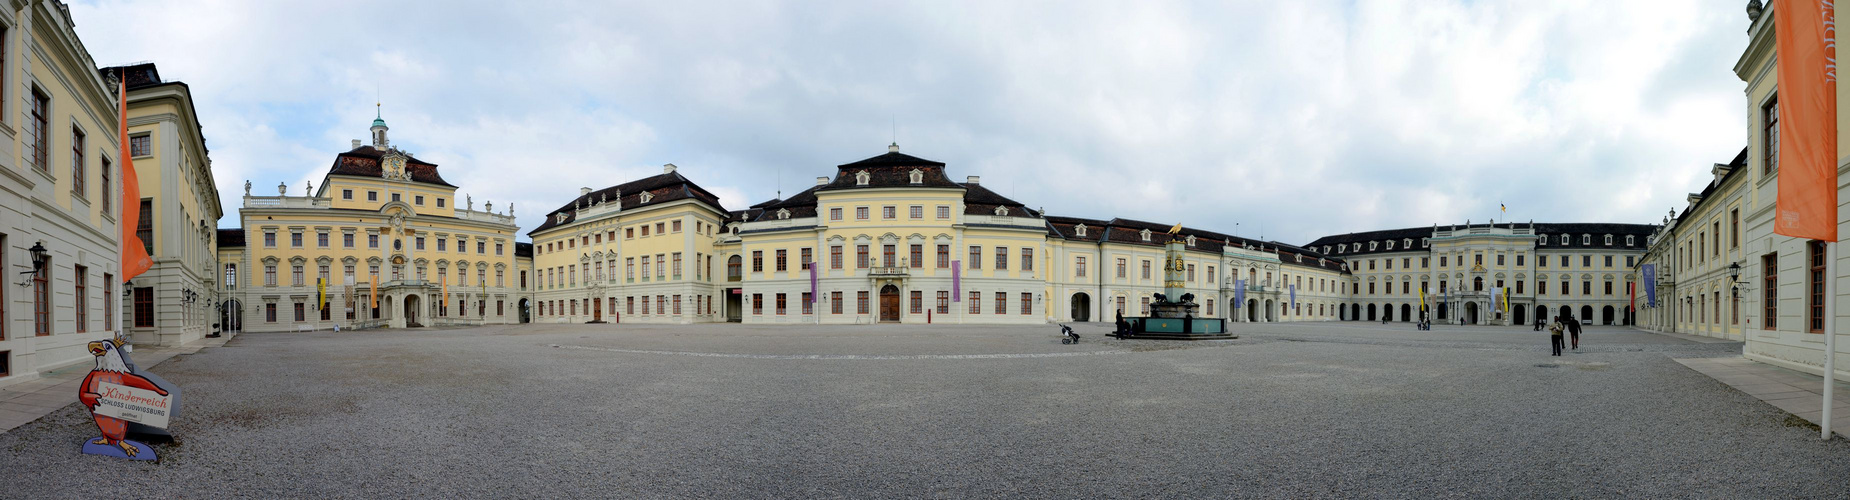 Residenzschloss Ludwigsburg - Innenhof